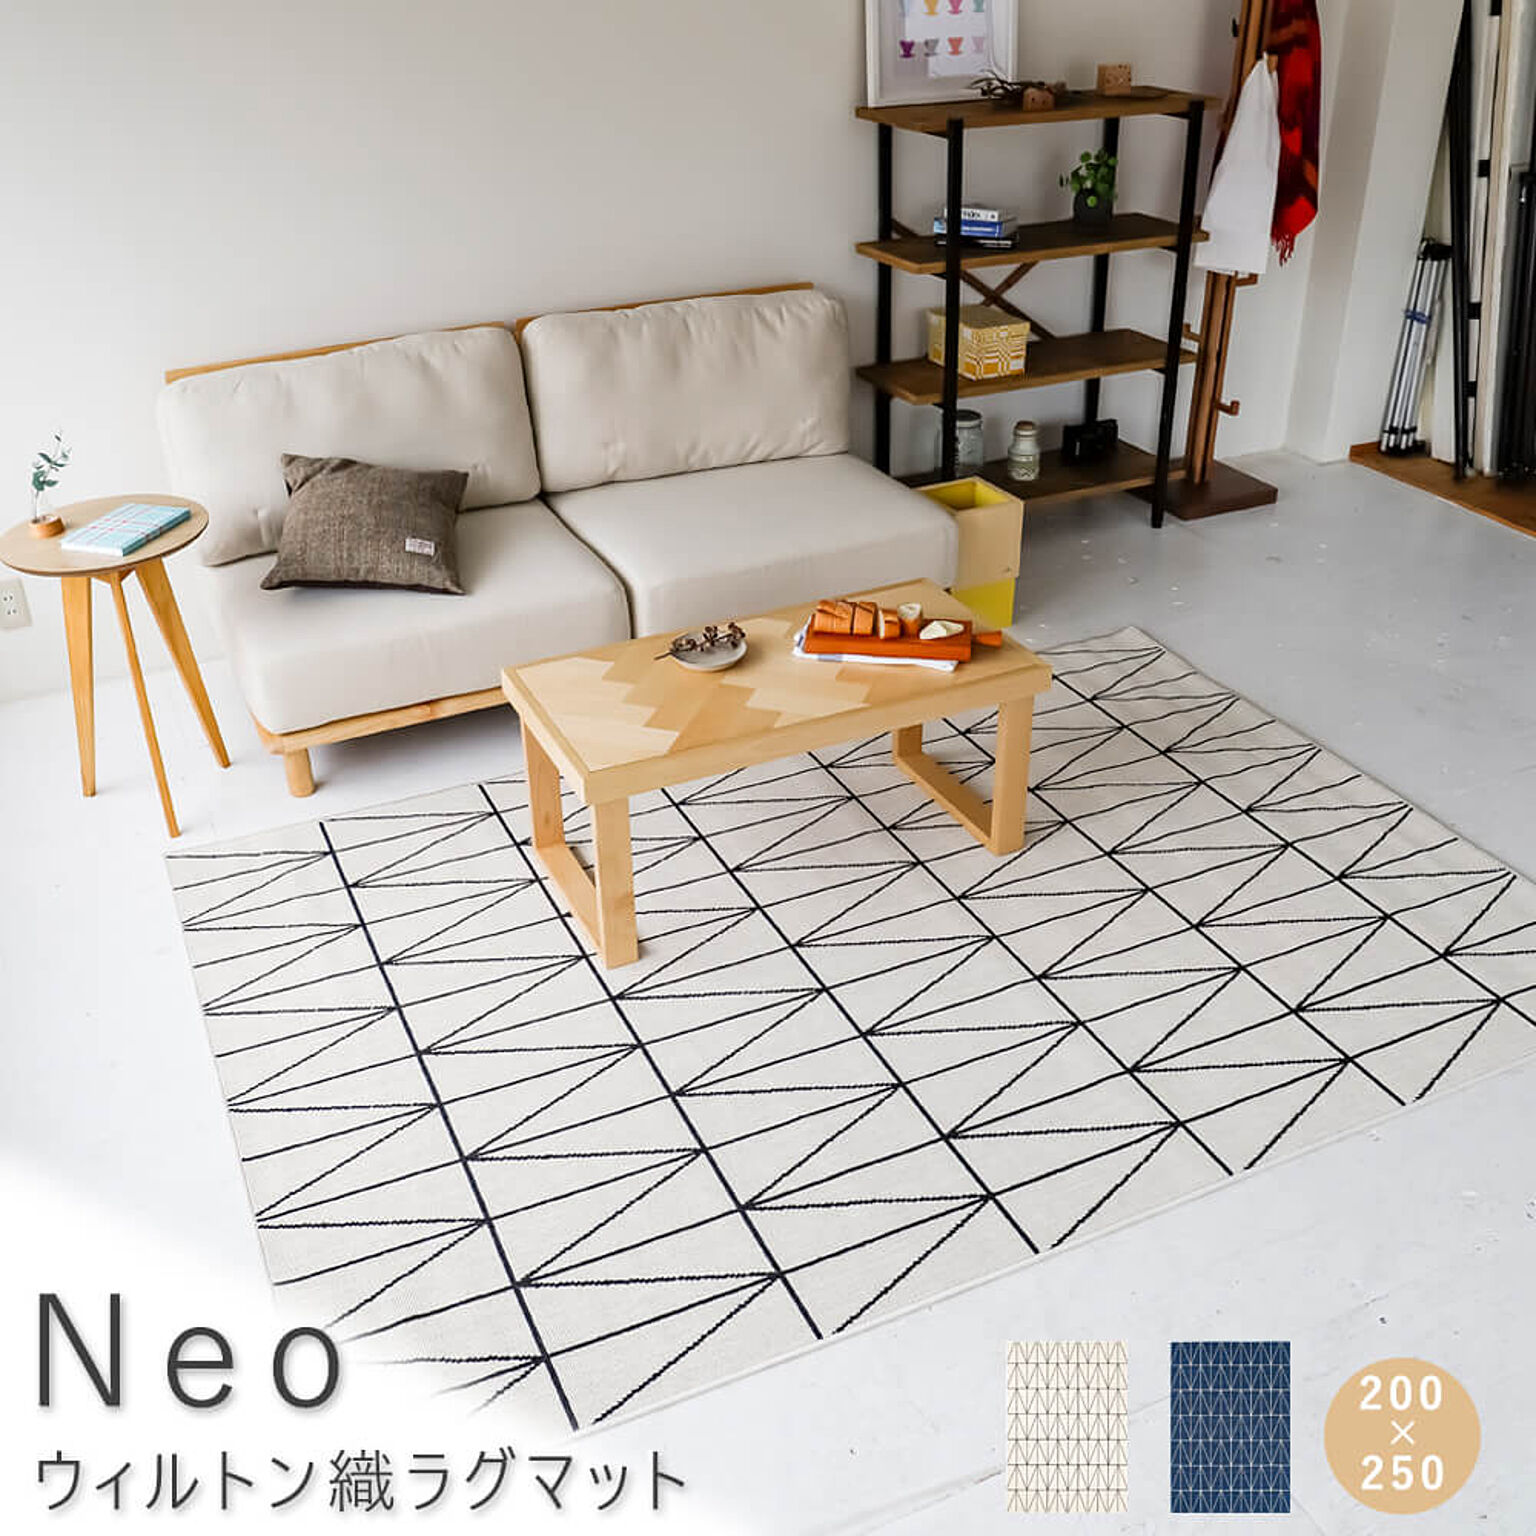 Neo ウィルトン織ラグマット ホワイト 200cm×250cm m10926